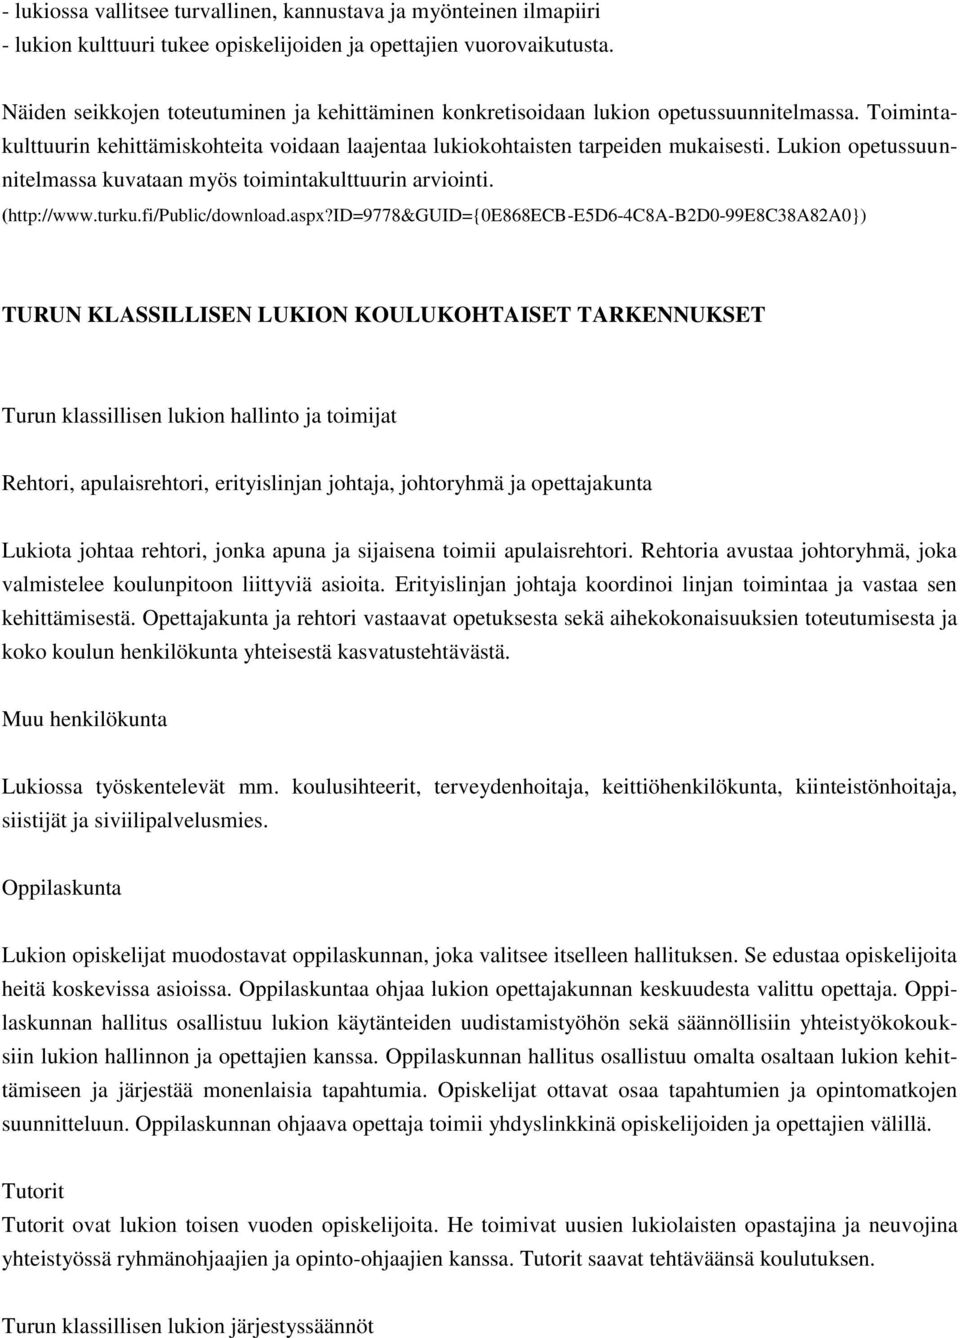 Lukion opetussuunnitelmassa kuvataan myös toimintakulttuurin arviointi. (http://www.turku.fi/public/download.aspx?